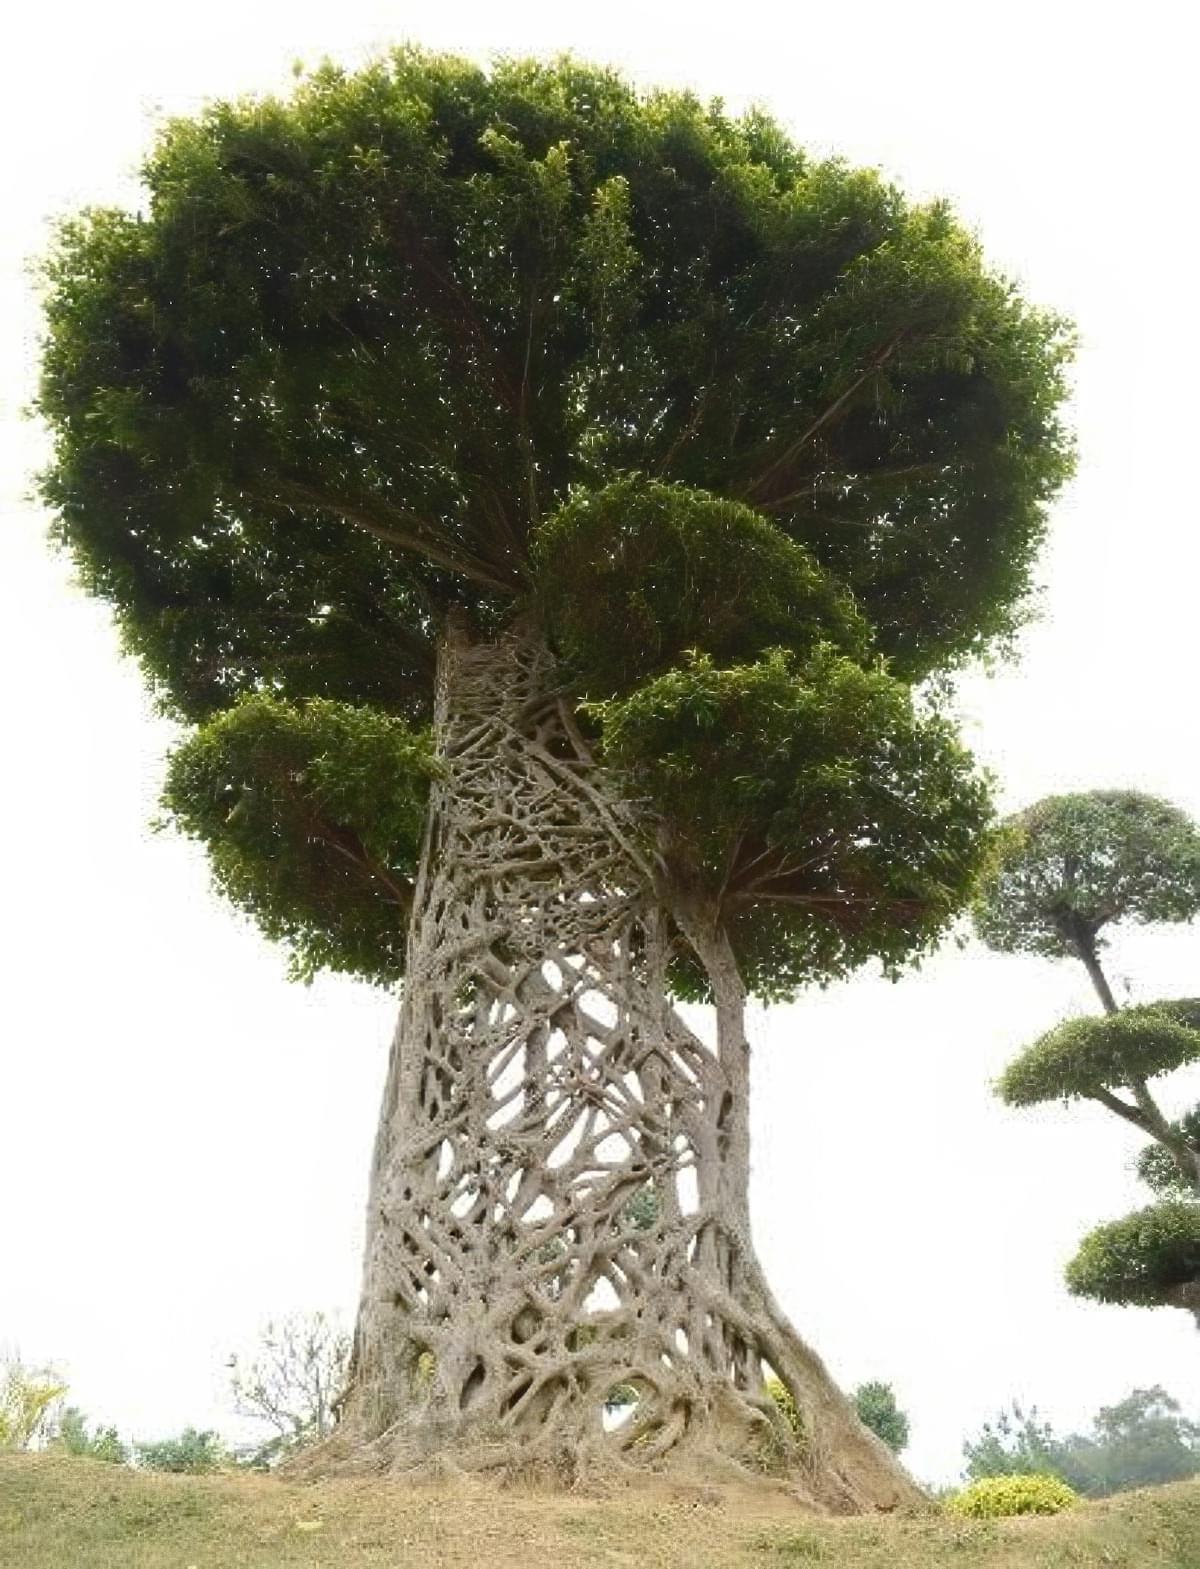 Un figuier étrangleur dans le parc nanhu (Nanning, Chine) montre son réseau de racines aériennes qui entouraient l'arbre porteur qu'il a fini par tue, limitant sa croissance